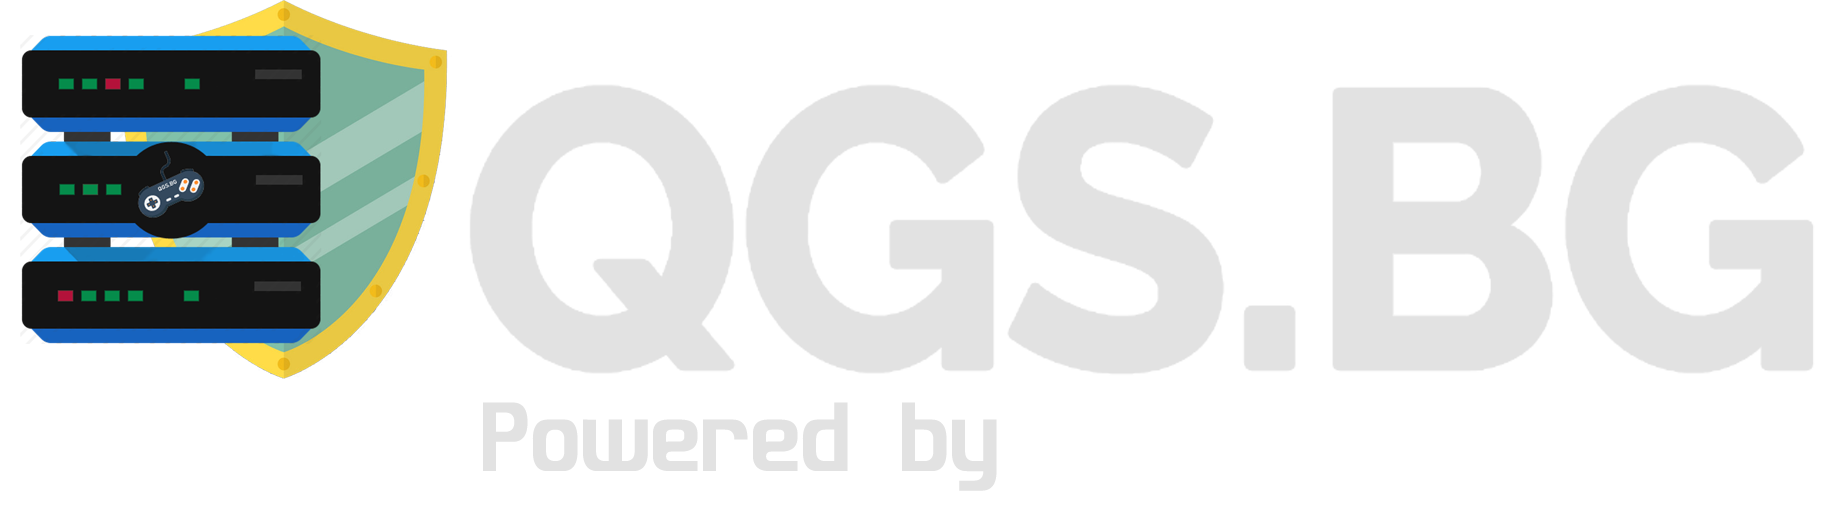 qgs-logo-xcg.png